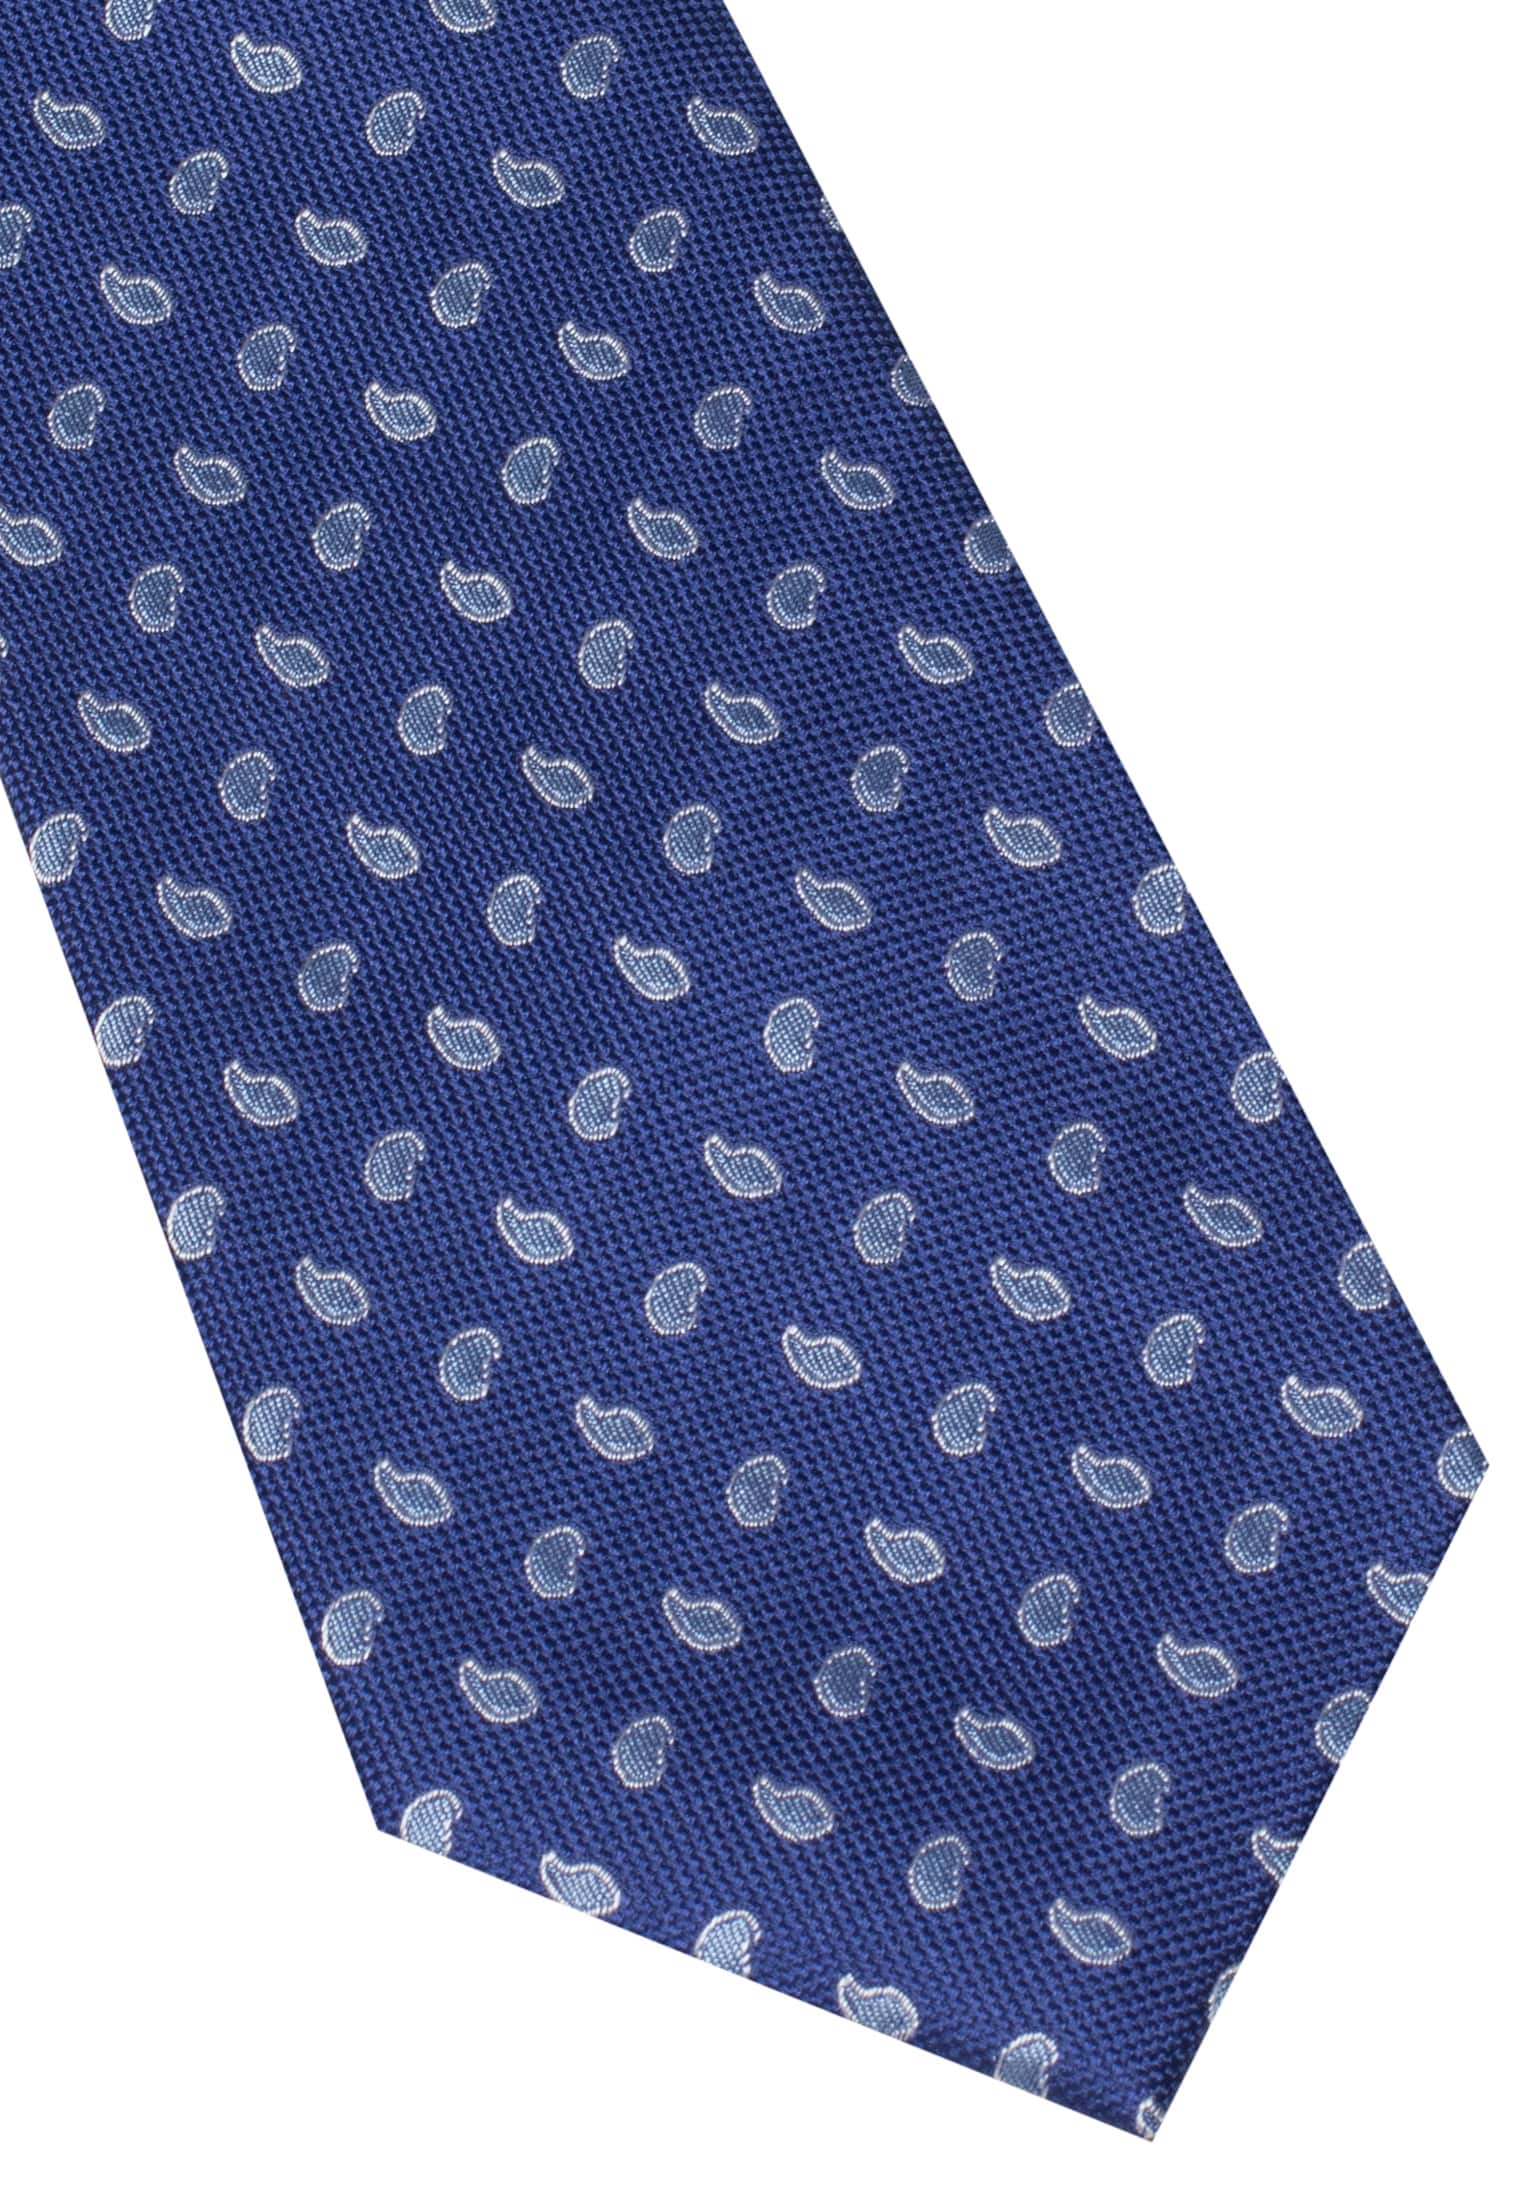 Krawatte in navy/blau gemustert